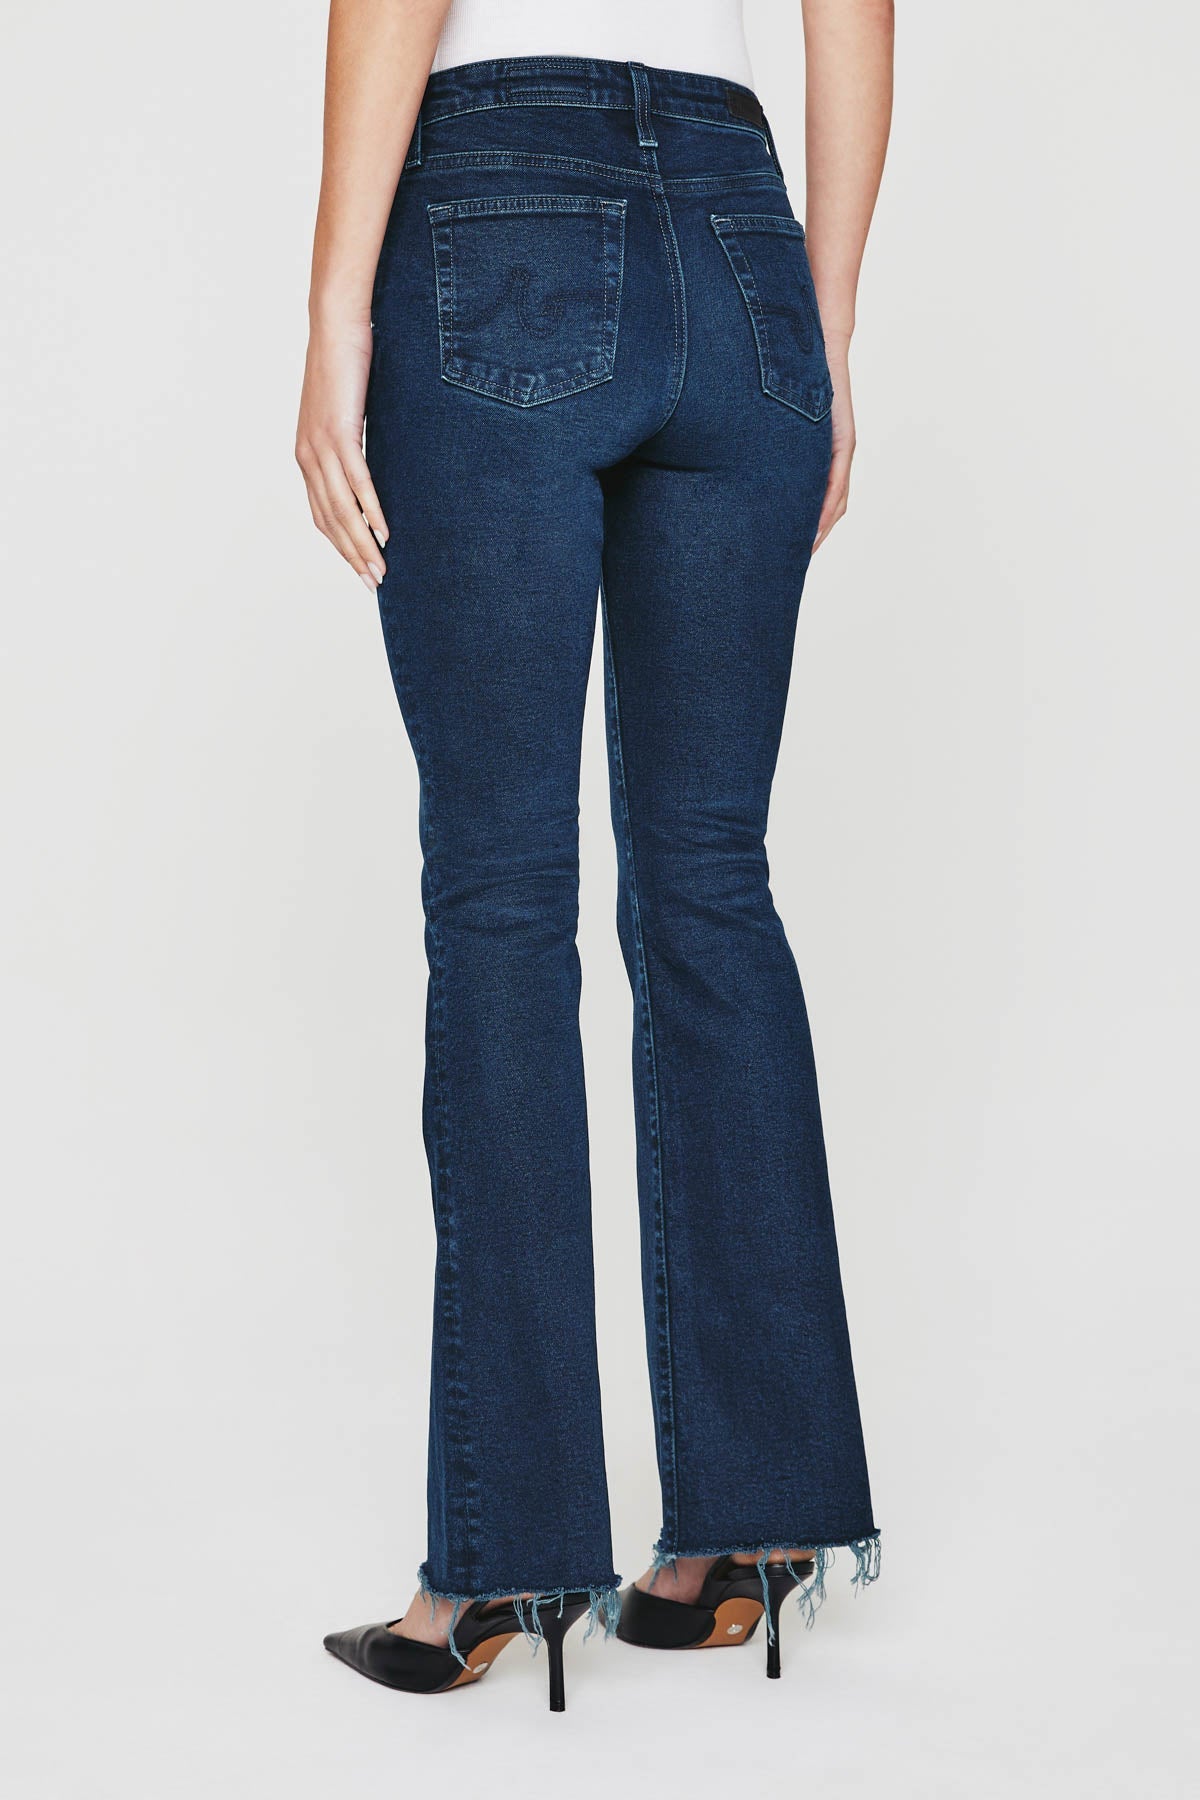 Farrah High Rise Boot Cut Jean - AG Jeans - Danali - CCS1B83VN-03YICO-25